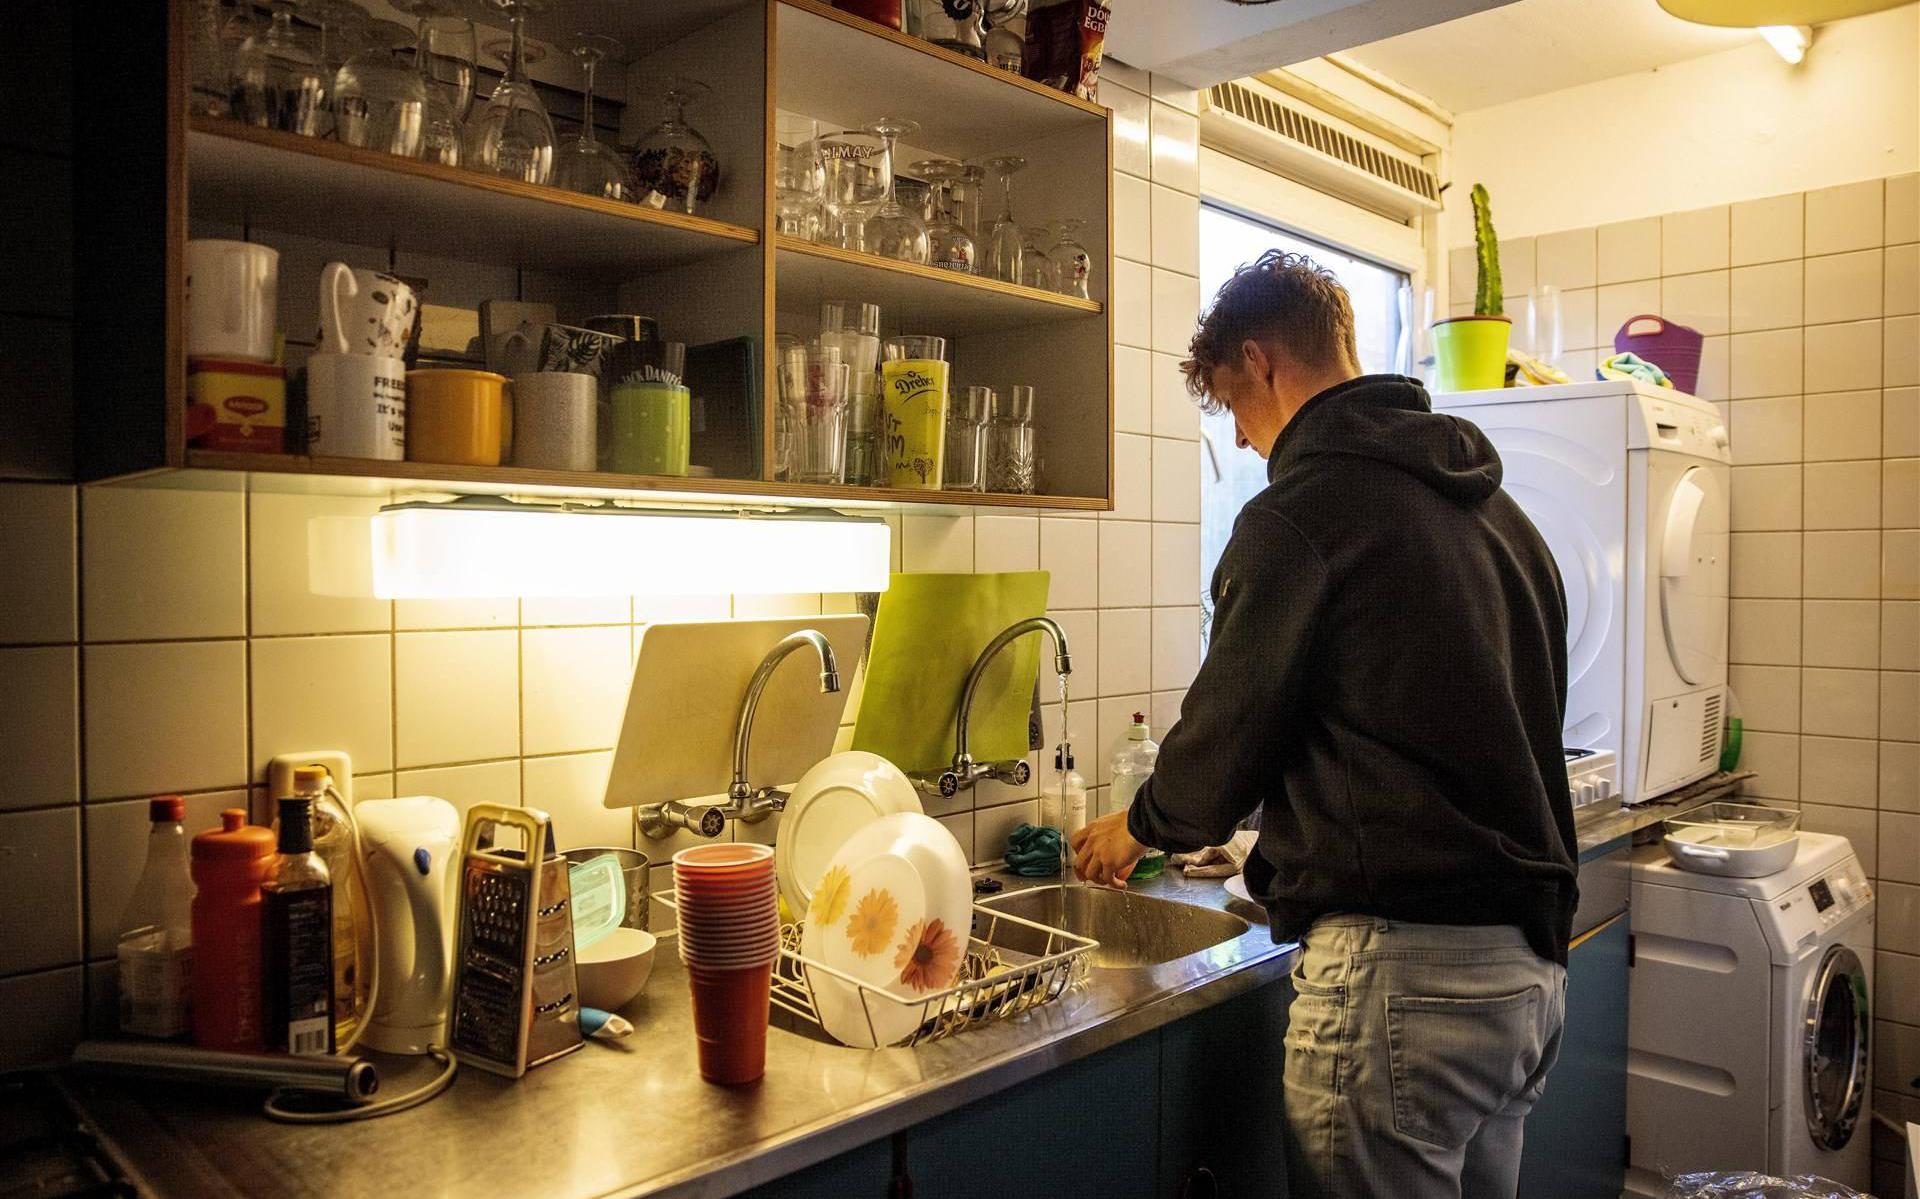 Woningen ombouwen tot studentenhuizen blijft in de gemeente Groningen taboe.